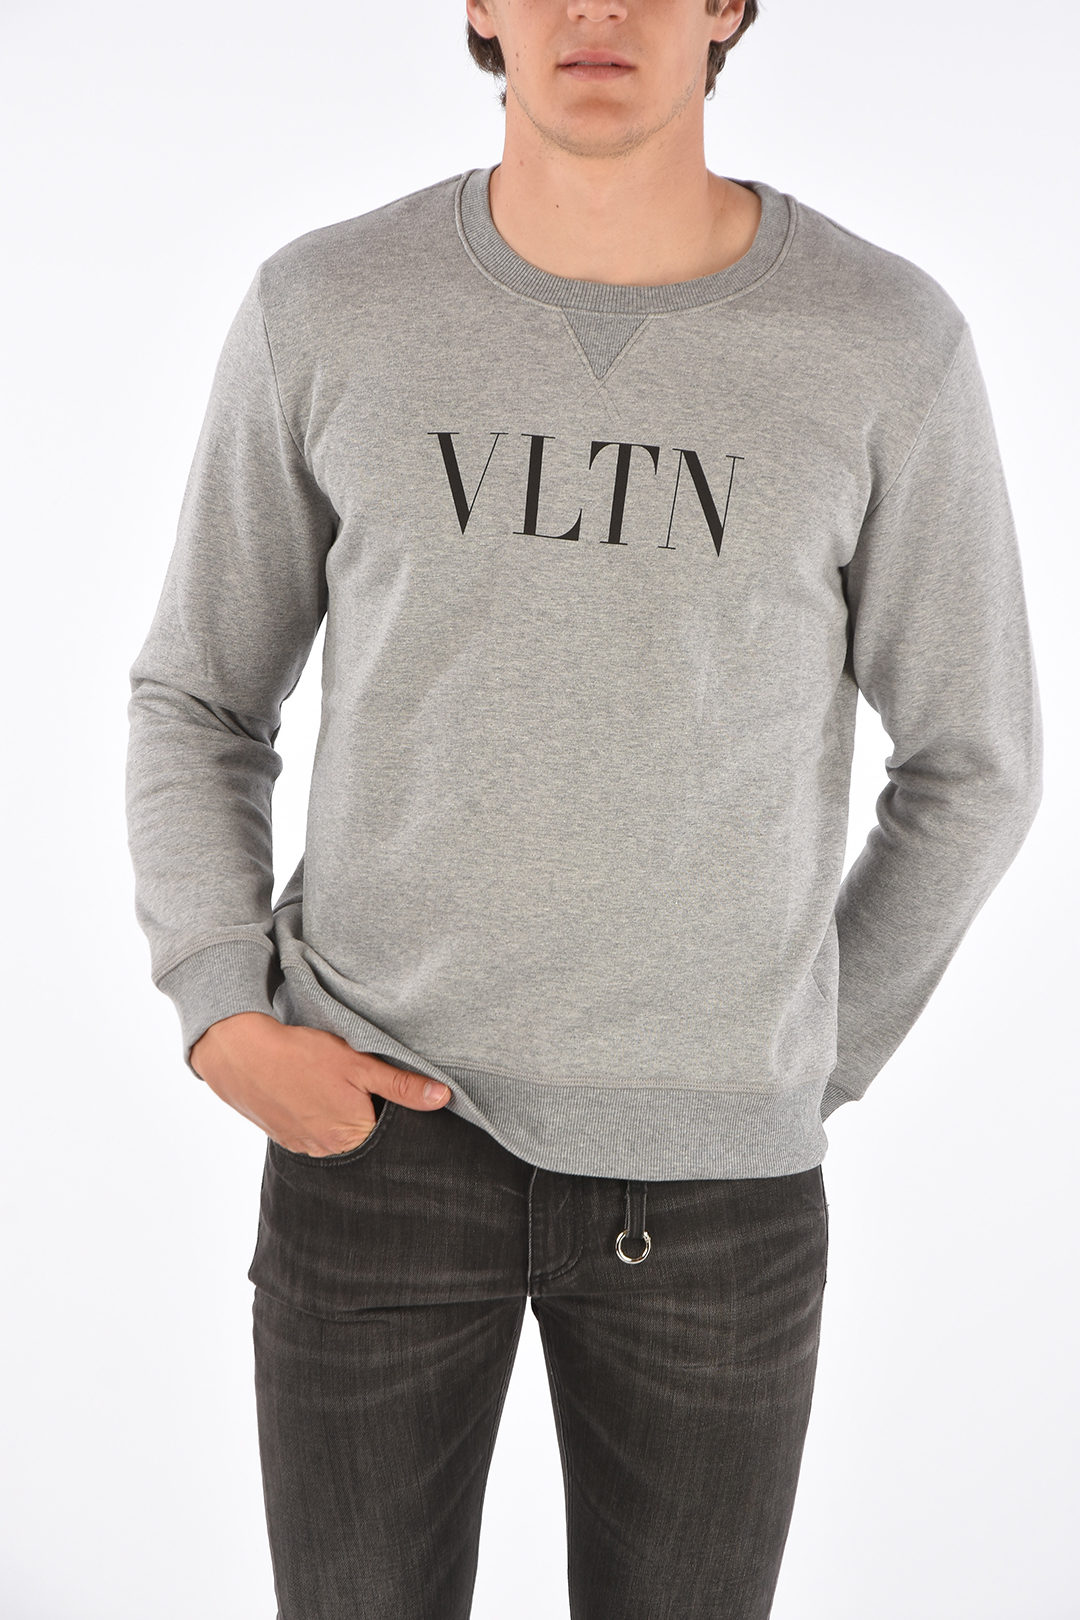 Valentino VLTN printed men - Glamood Outlet